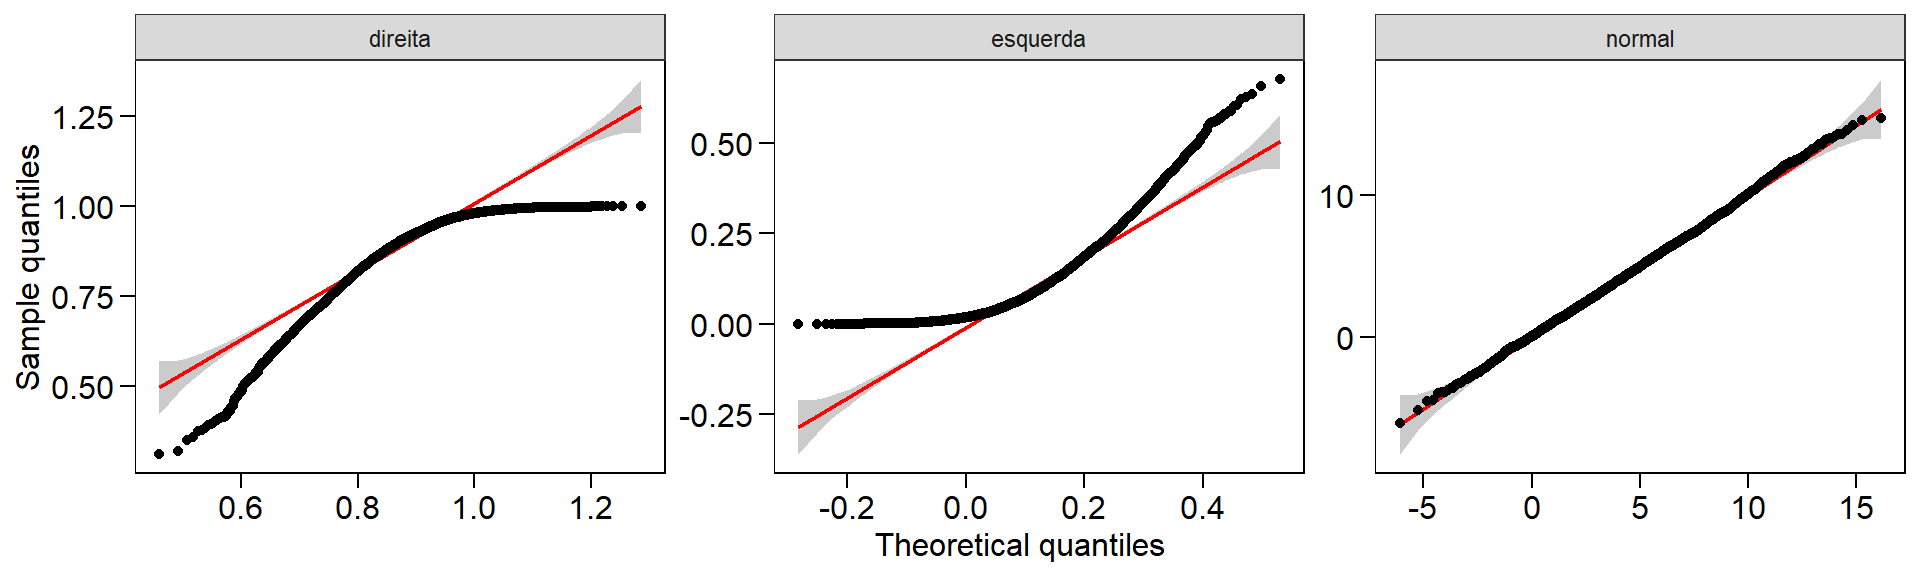 Gráfico quantil-quantil de conjuntos de dados com assimetria à esquerda, direita e com distribuição normal.